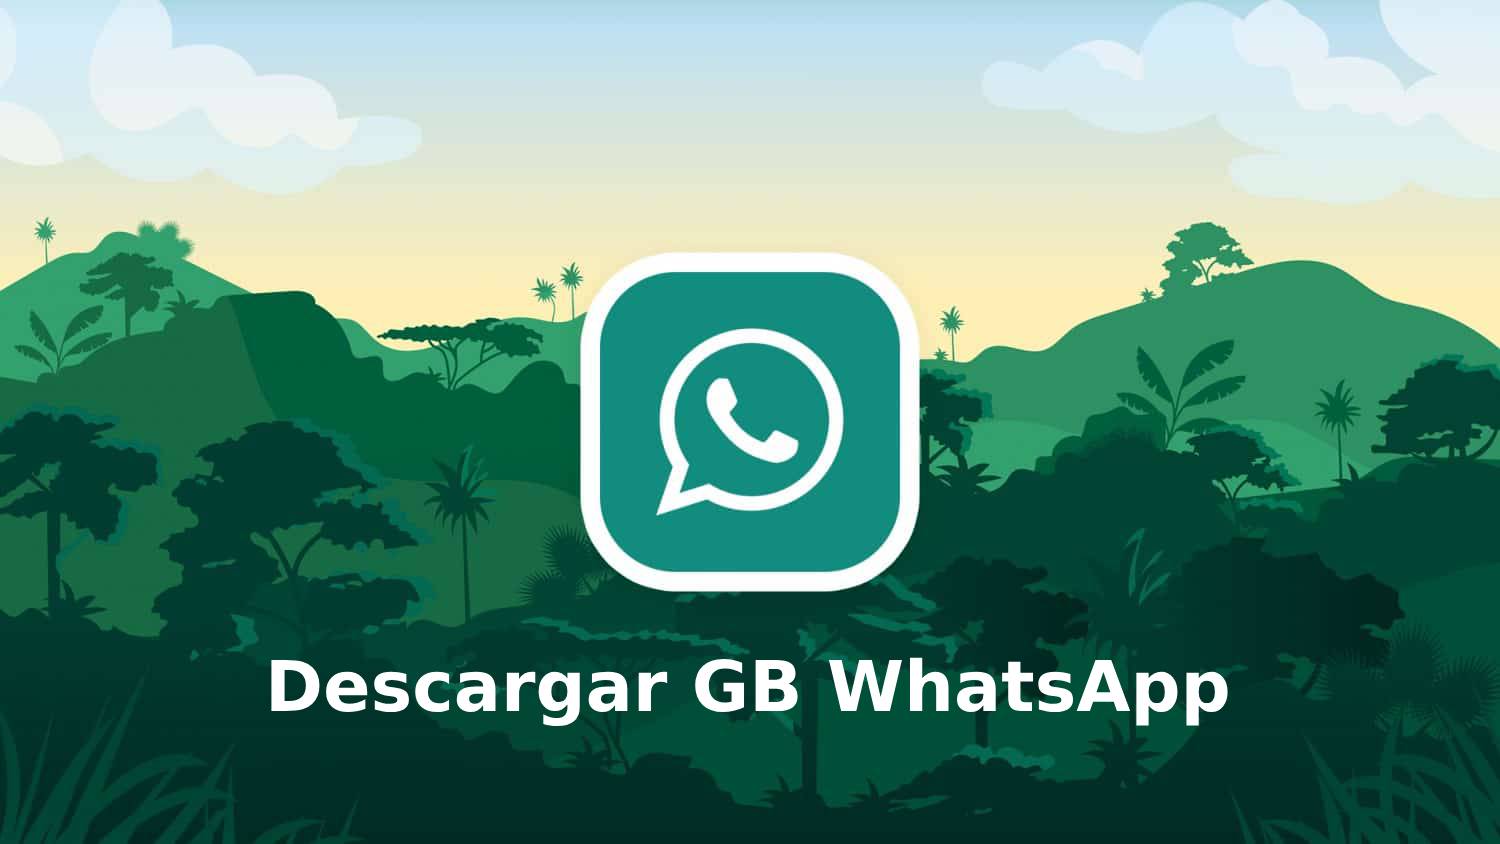 GB WhatsApp V15.60